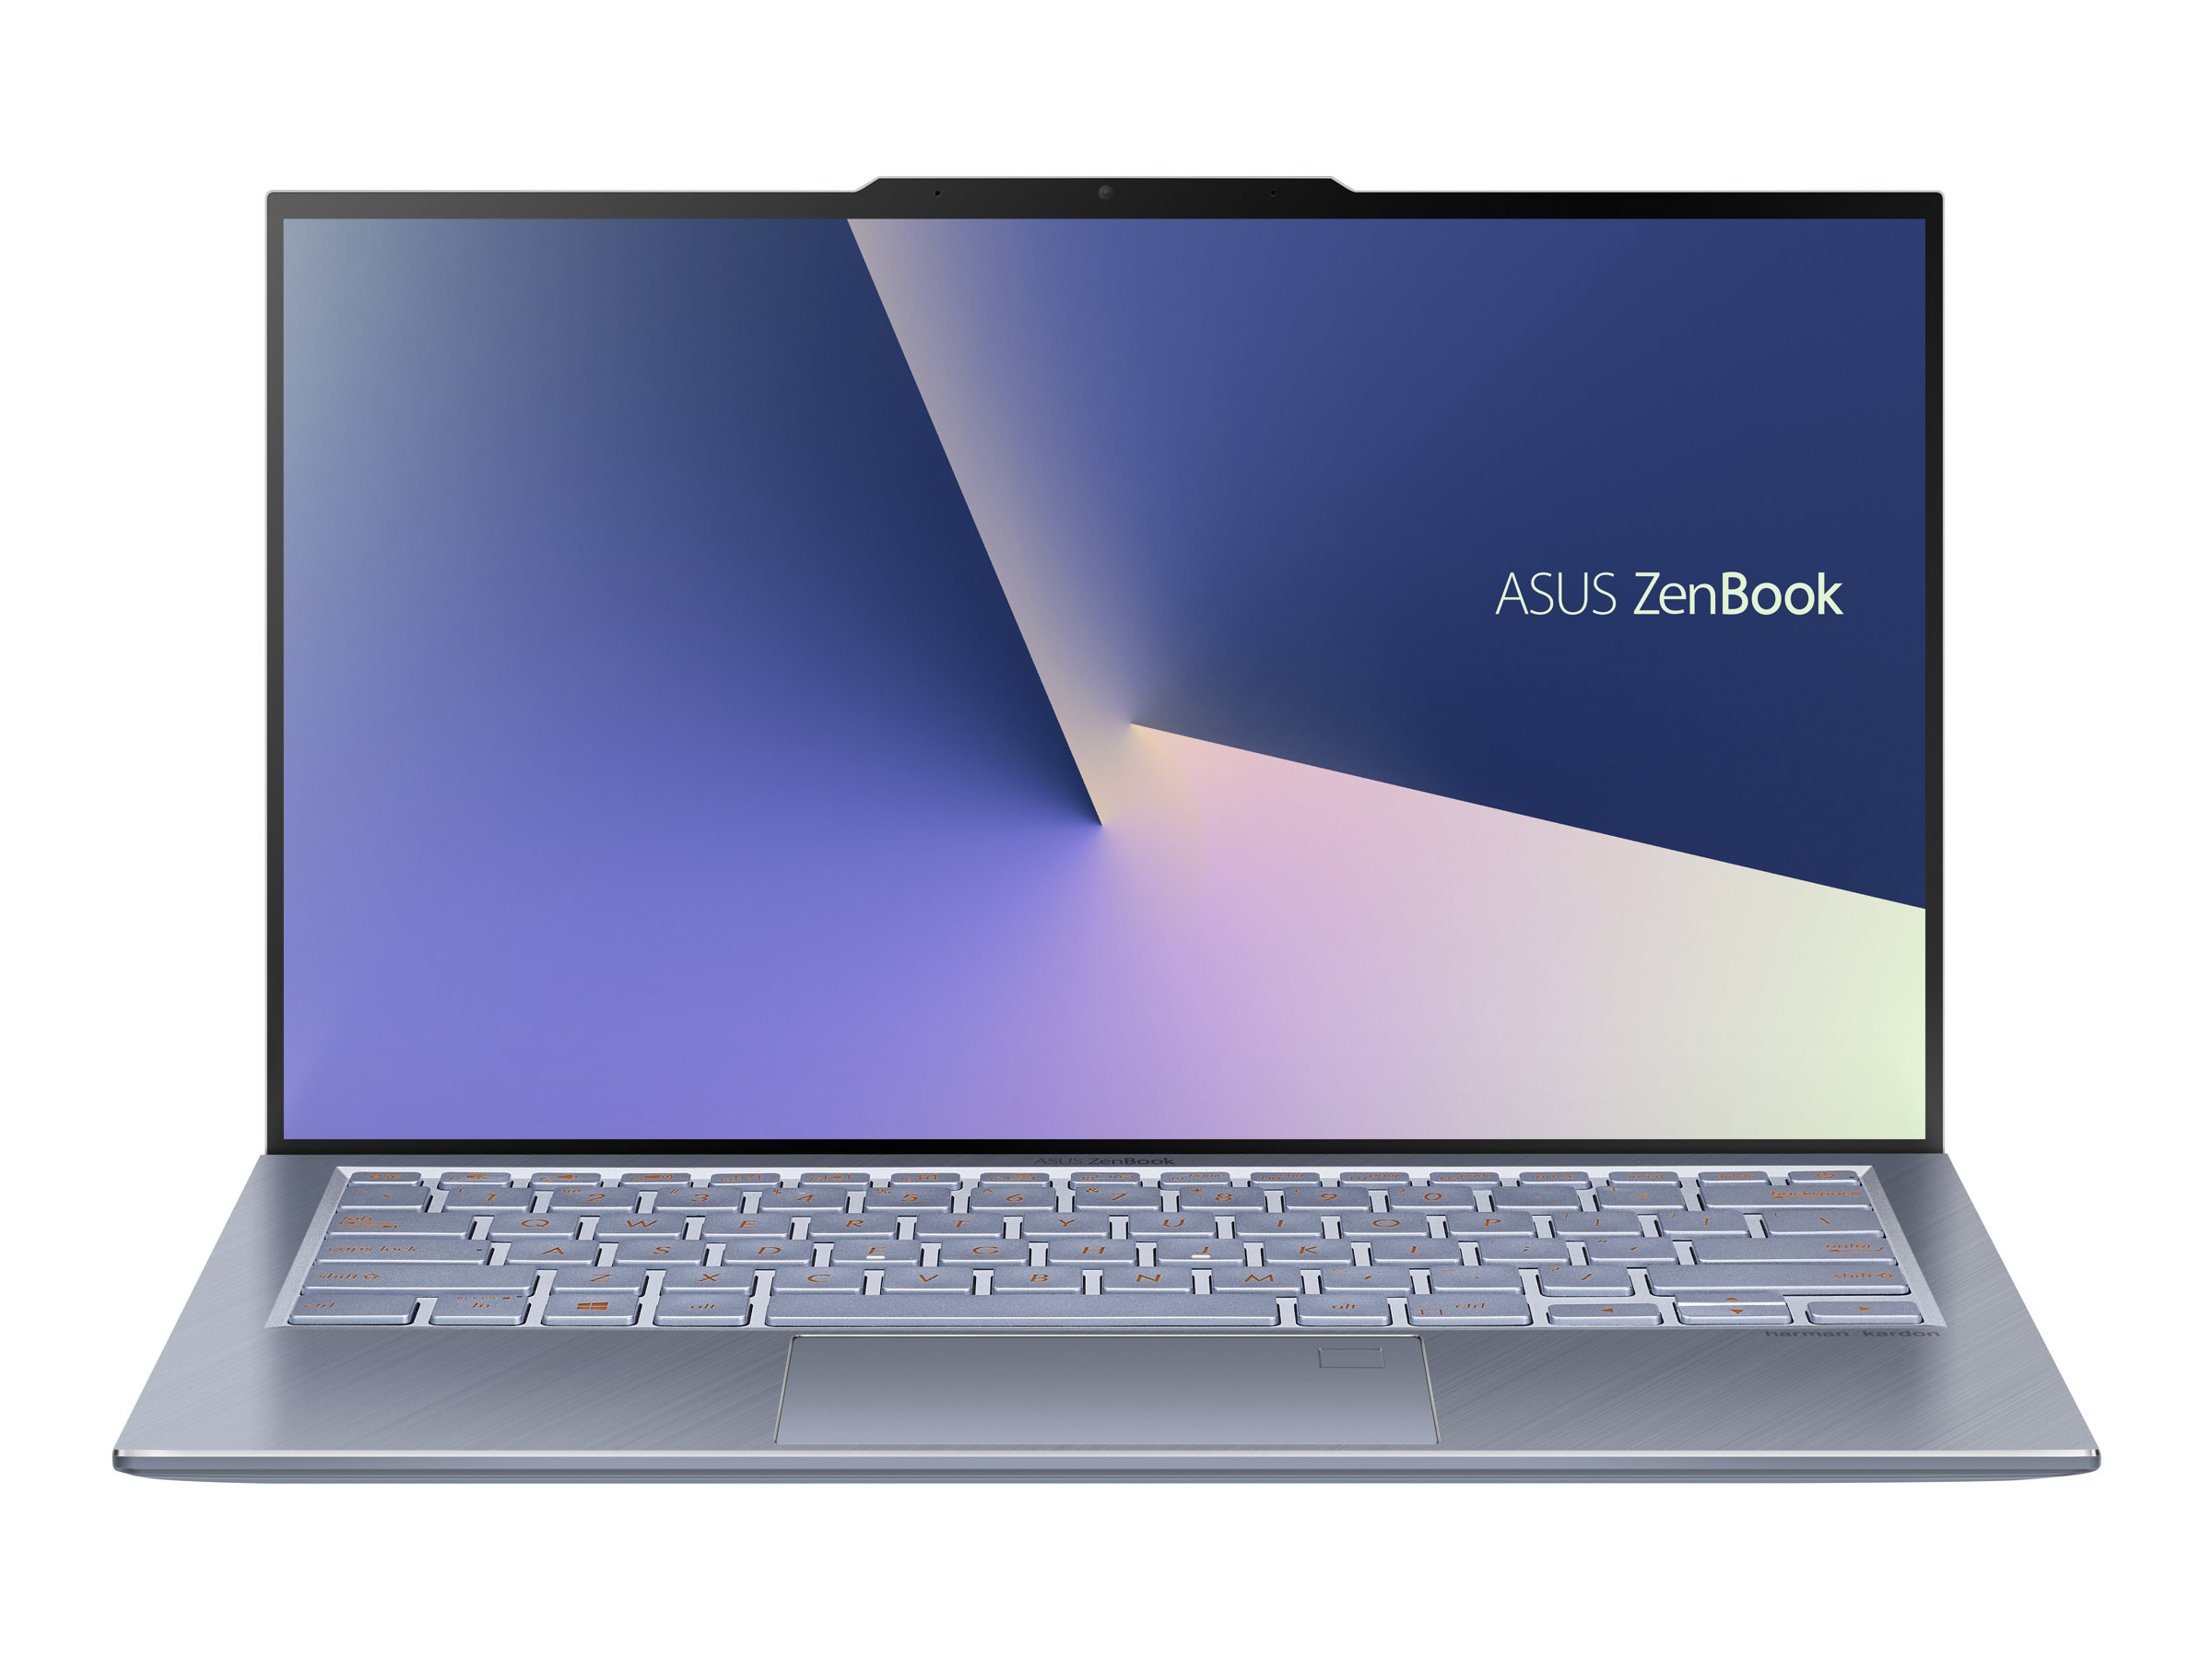 ASUS ZenBook S13 UX392FN (AB009R)